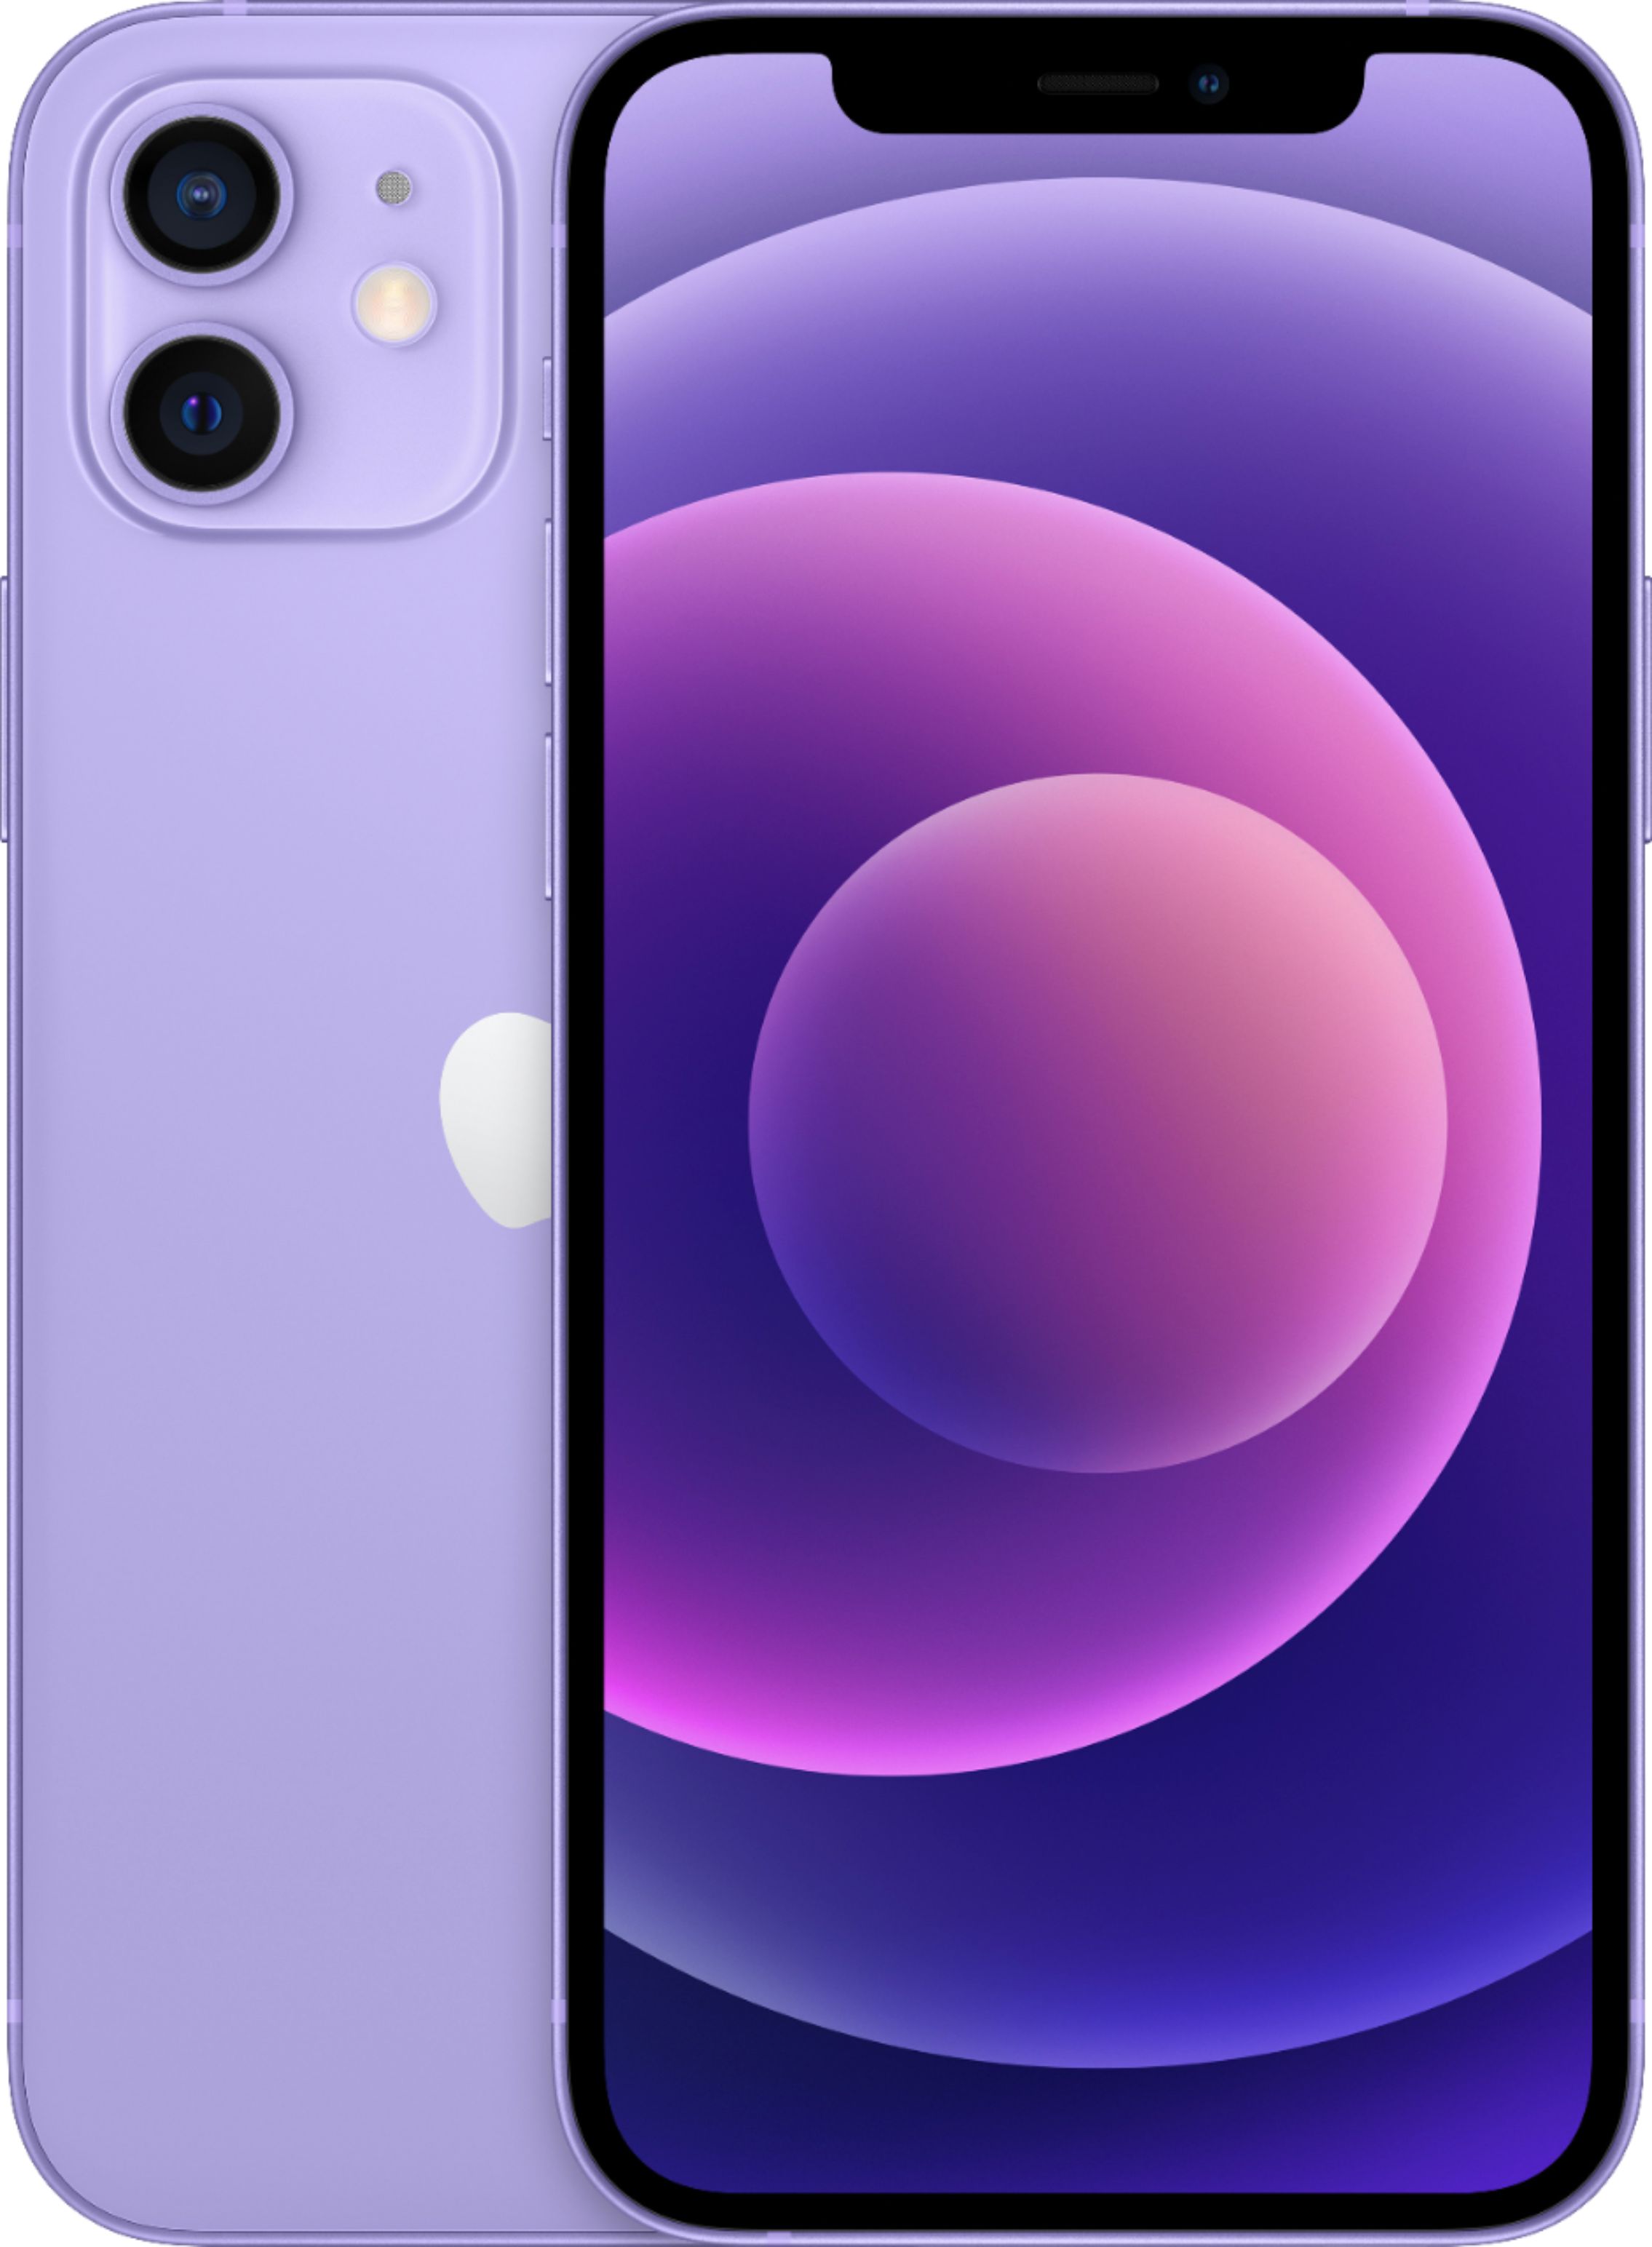 Apple iPhone 12 mini 5G 64GB Purple (Verizon) MJQ83LL/A - Best Buy